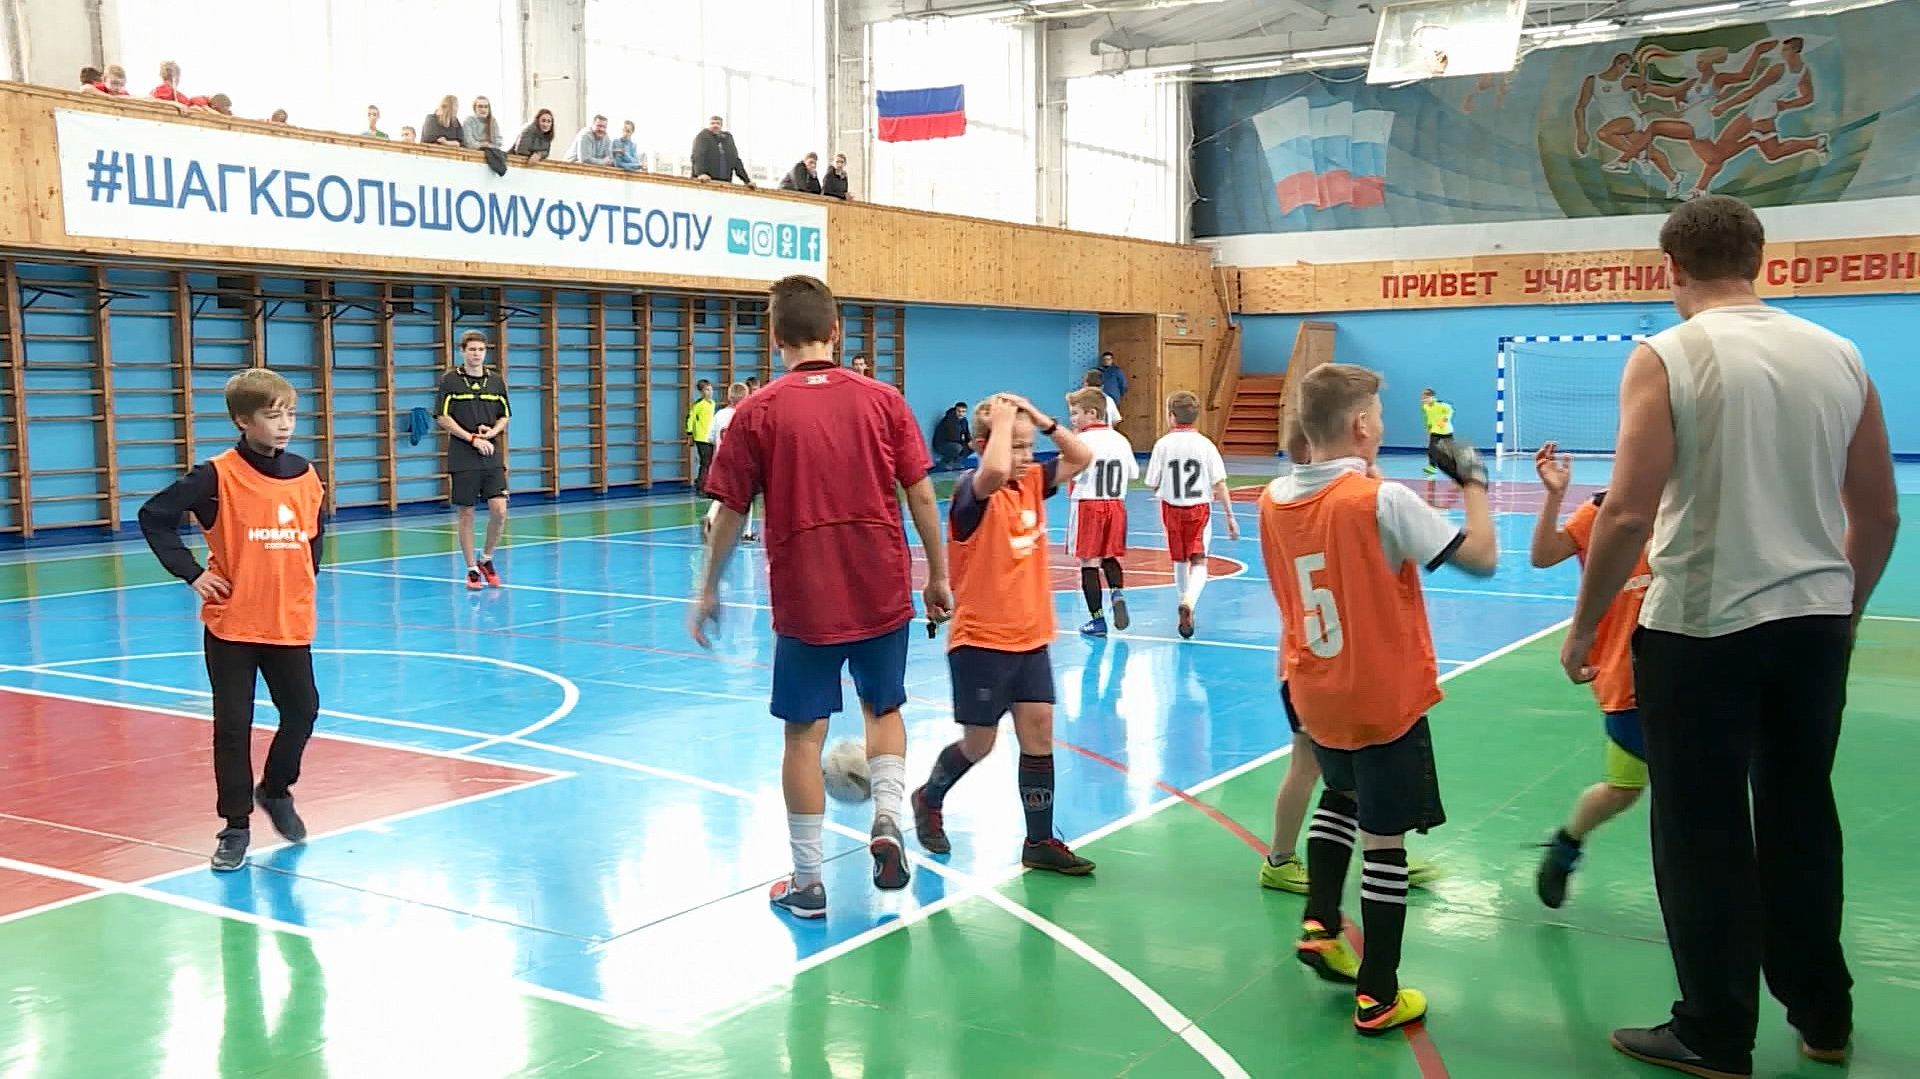 Юные костромичи сделают «Шаг к большому футболу!» в современном спортзале  